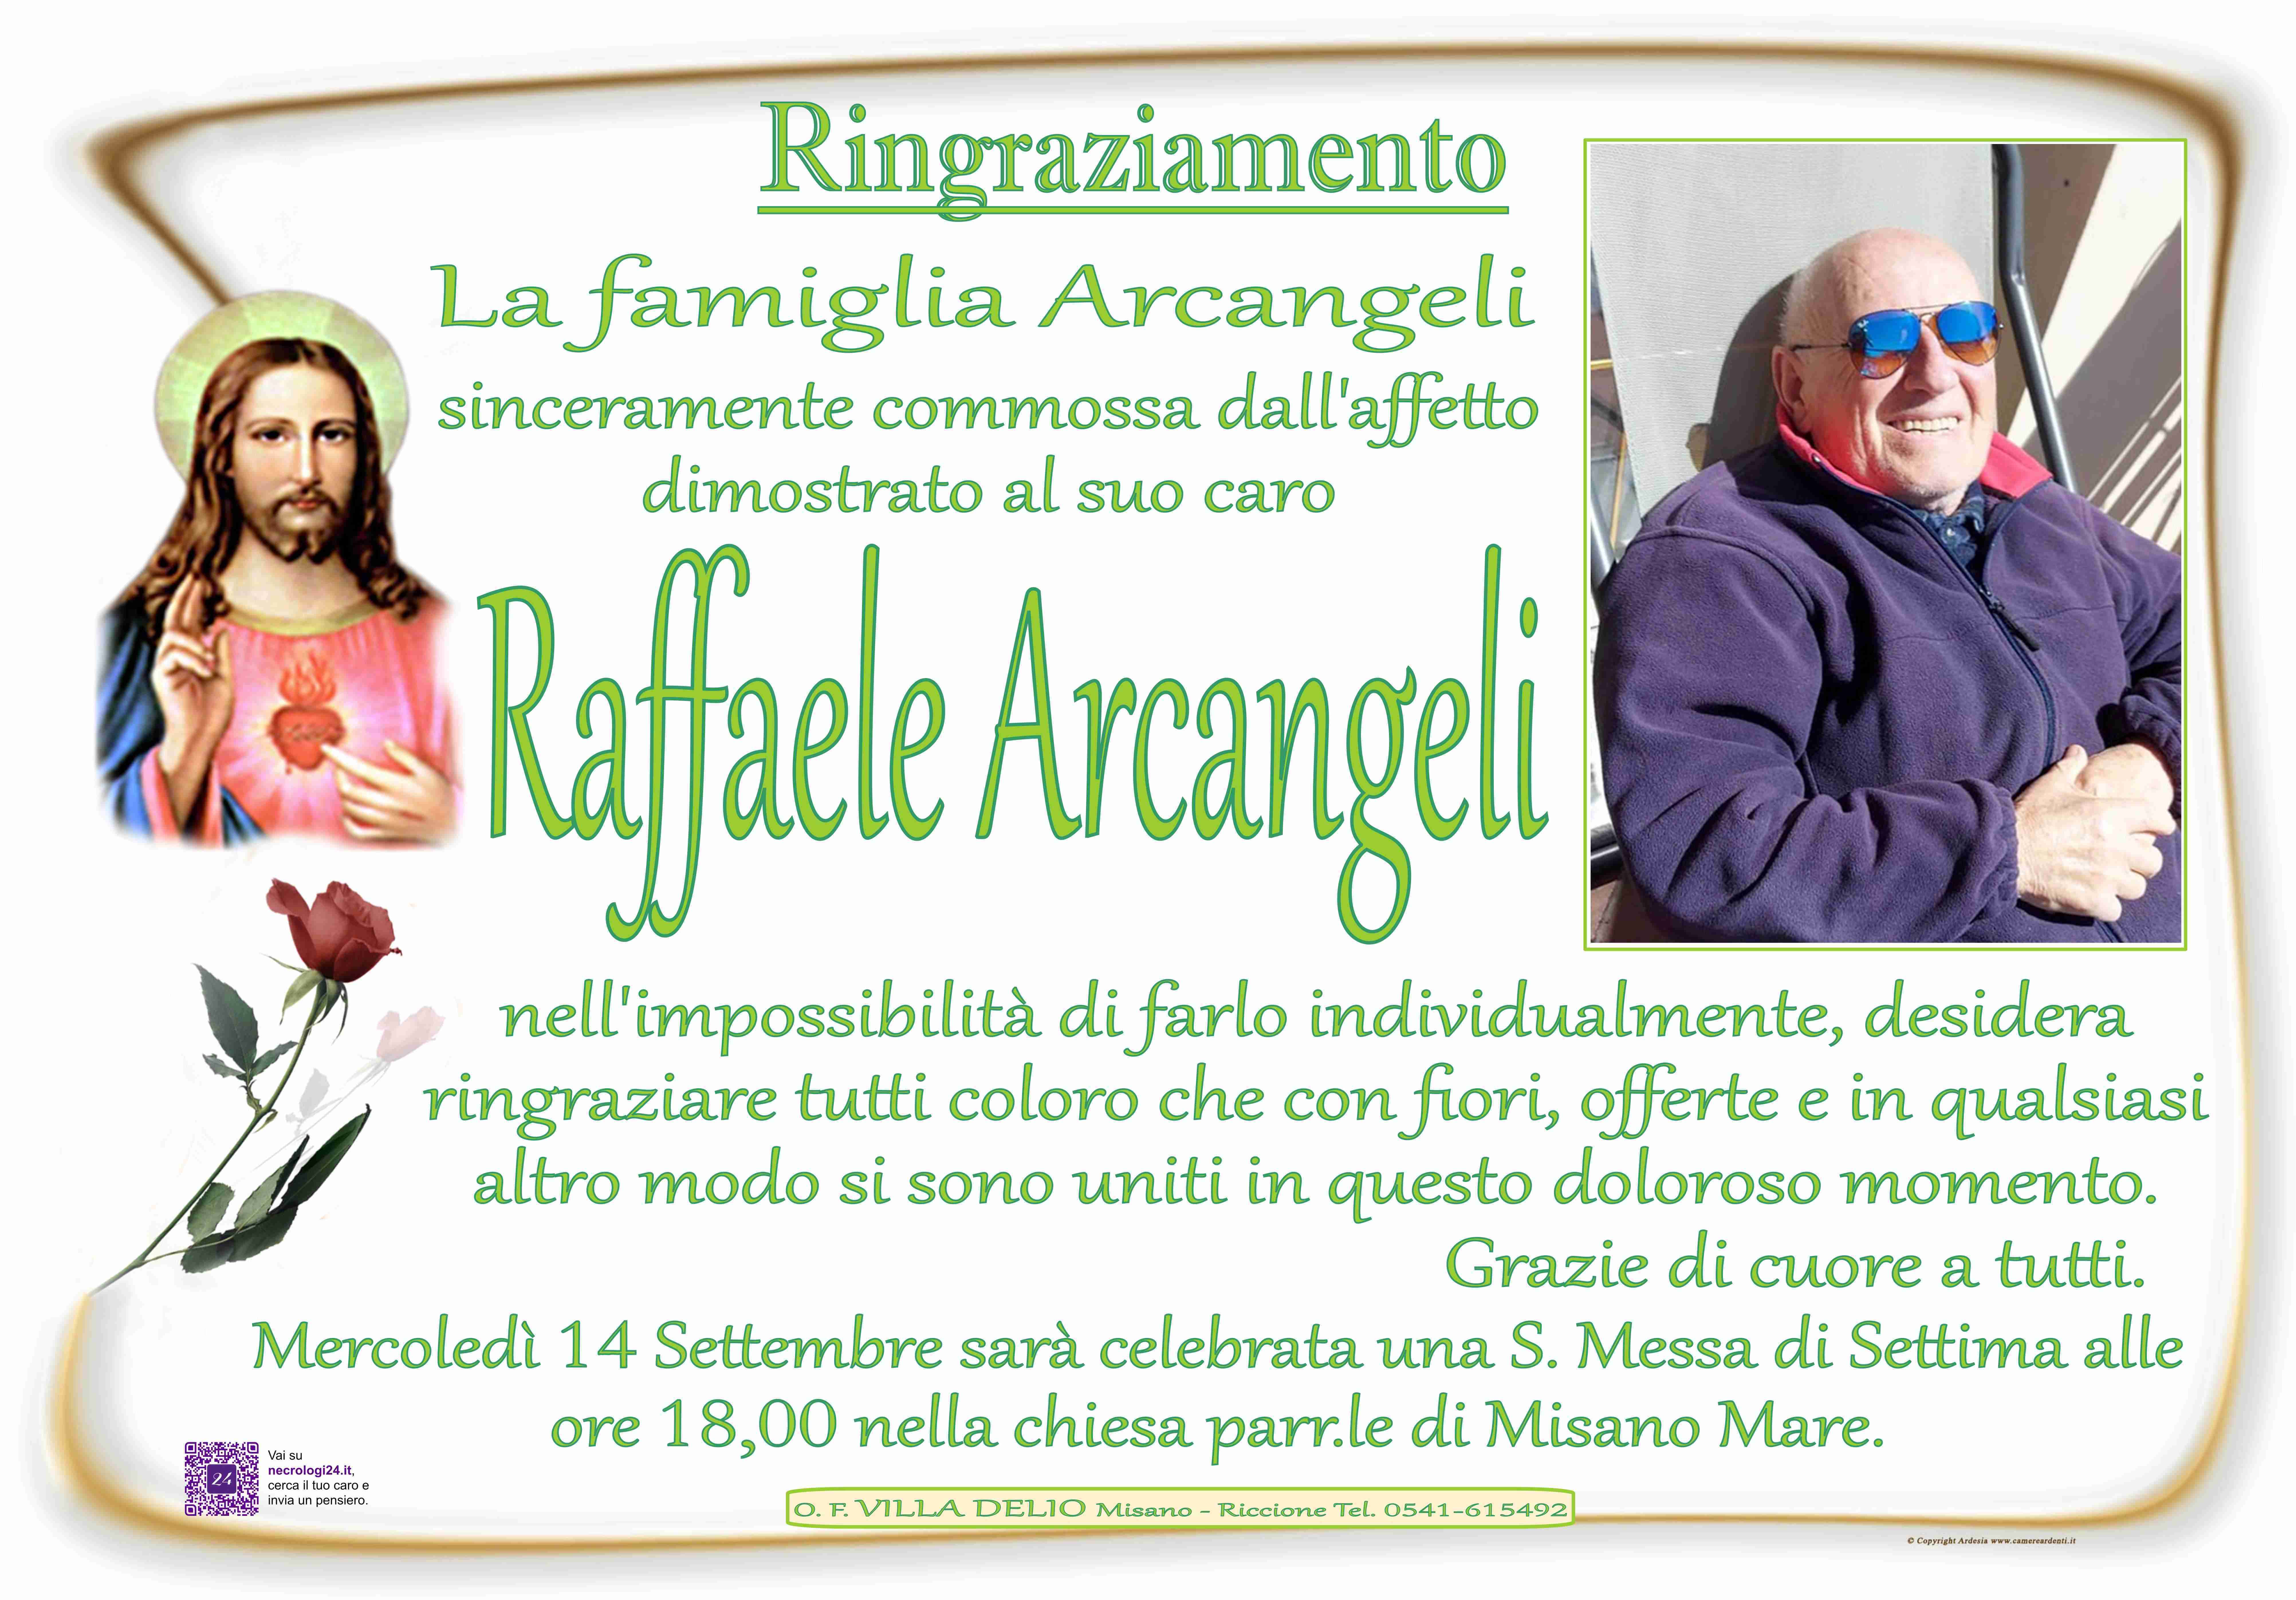 Raffaele Arcangeli